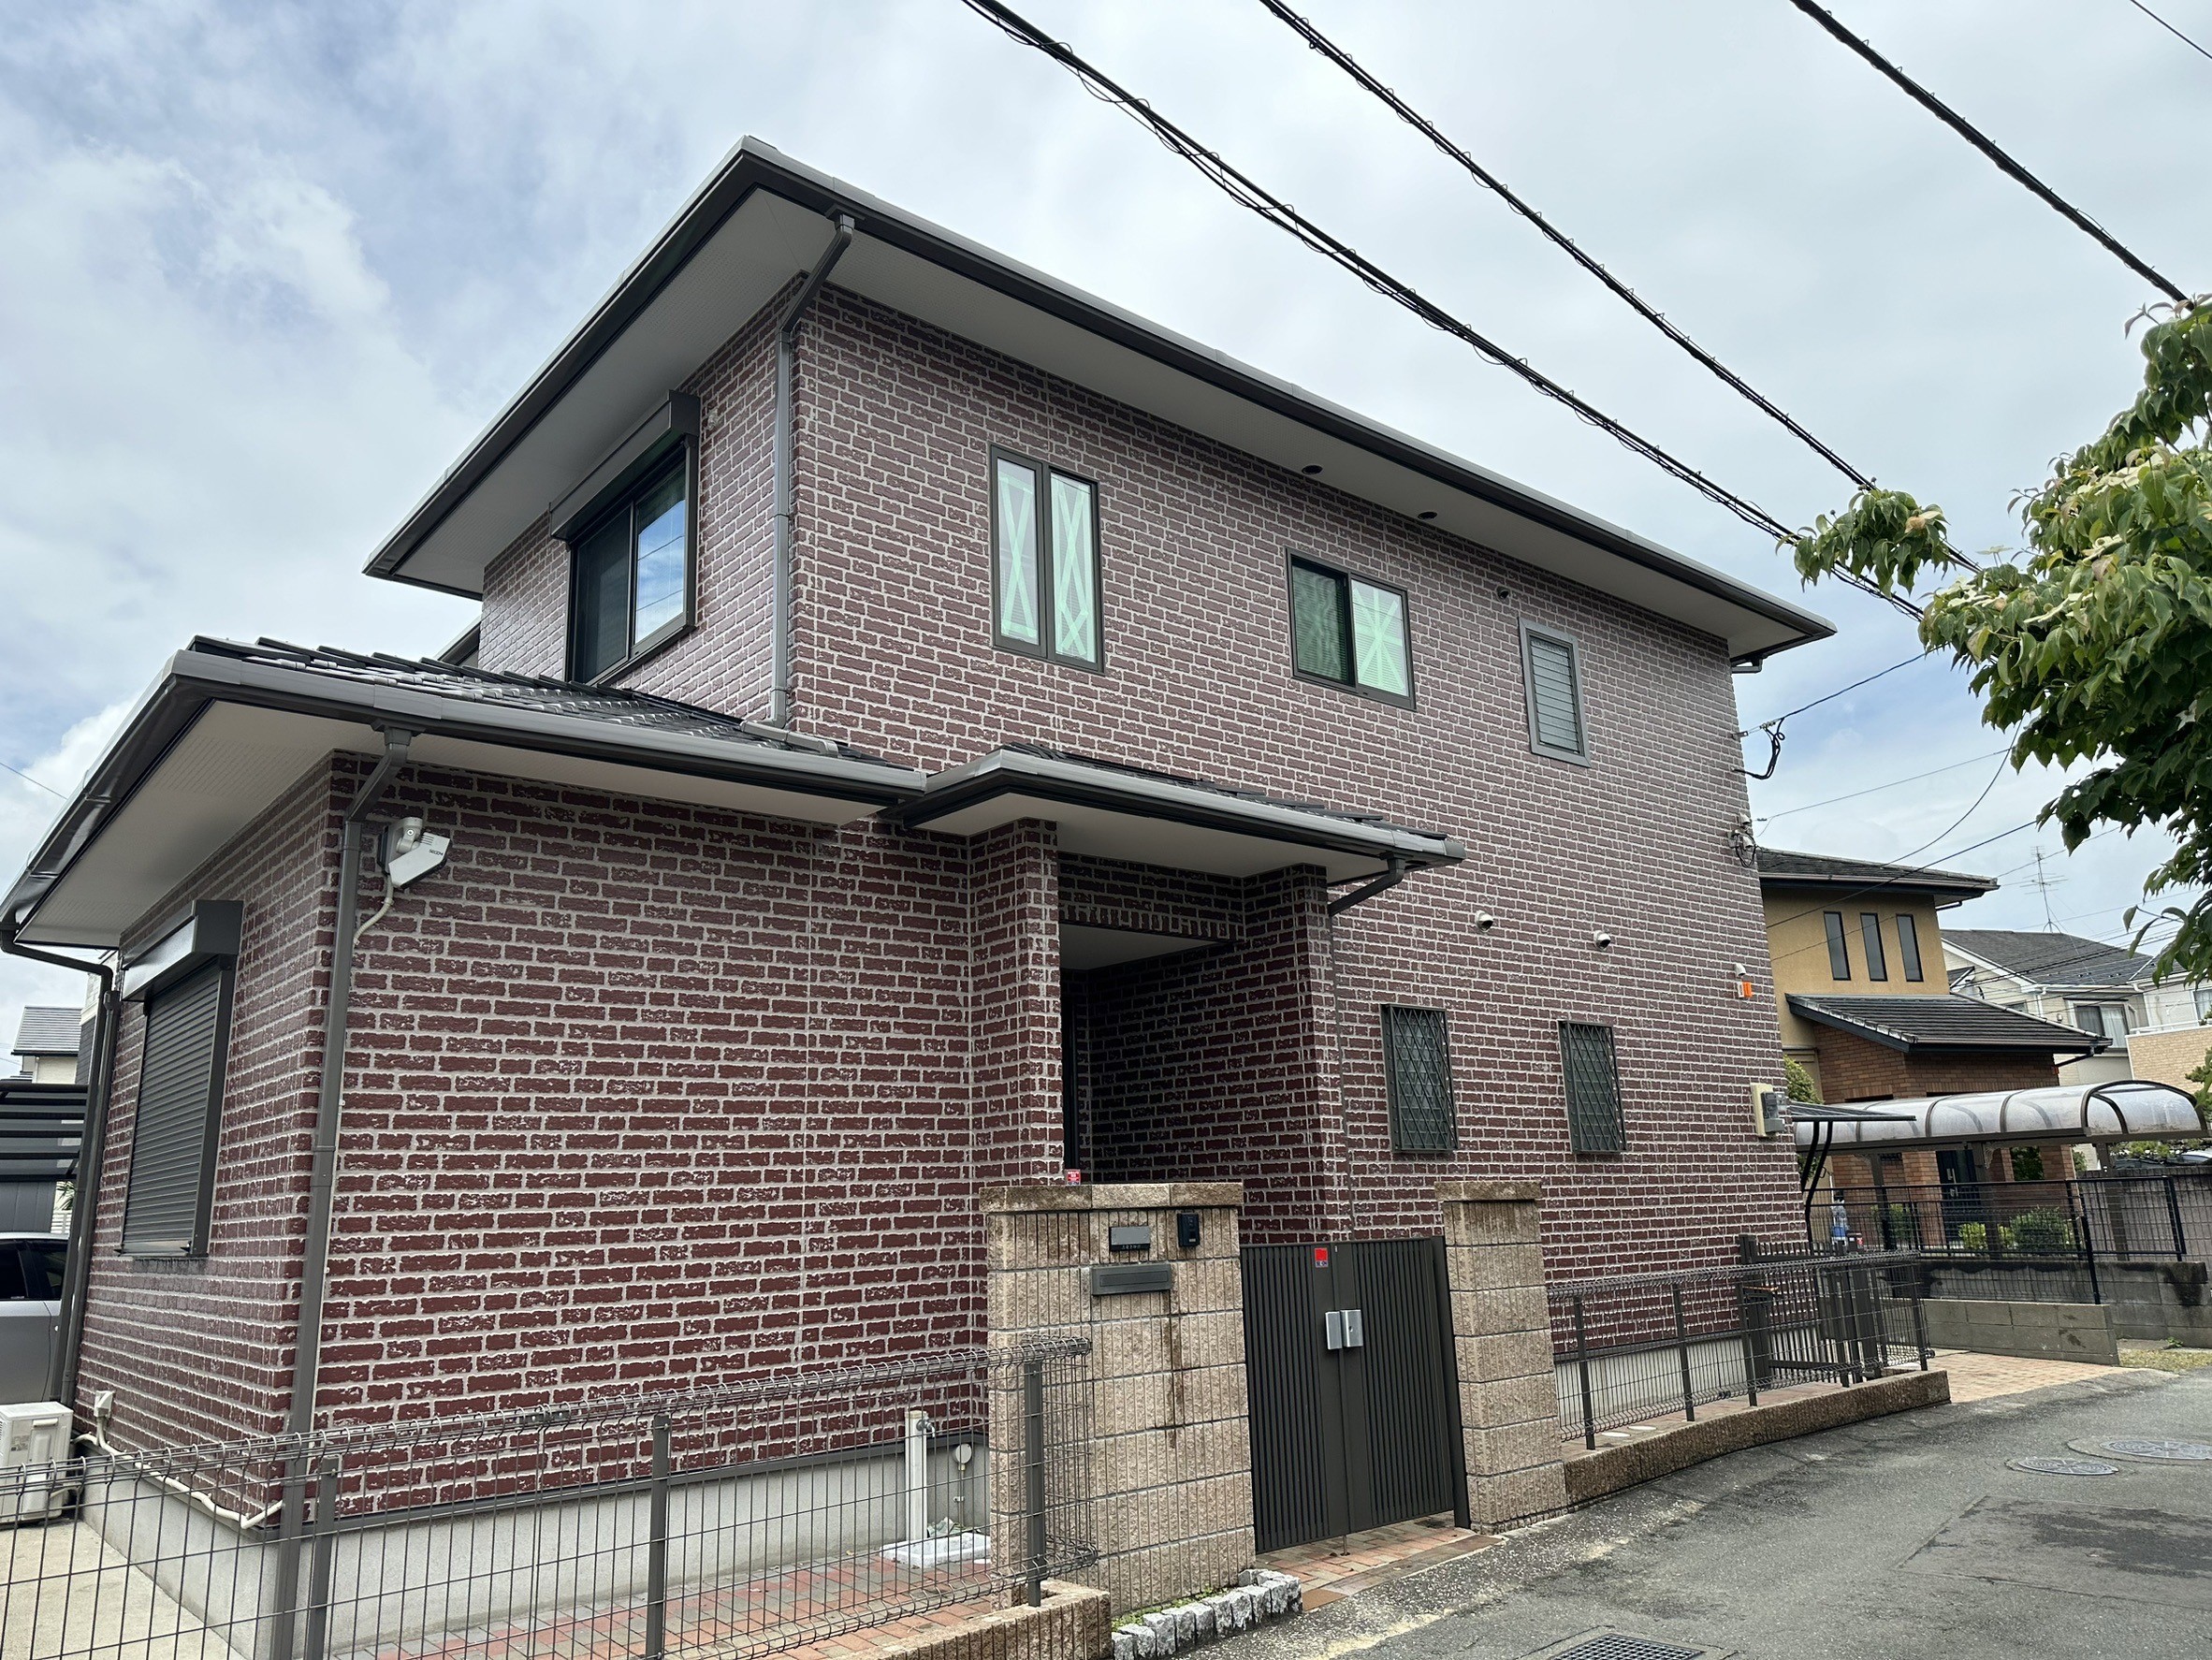 福岡県福岡市南区三宅のI様邸でプレミアムペイントの市場最高級シリコン樹脂を含有する水性ピュアピュアシリコンを使用した高品質な外壁塗装工事を行っています。5/31完成です。【HPより】